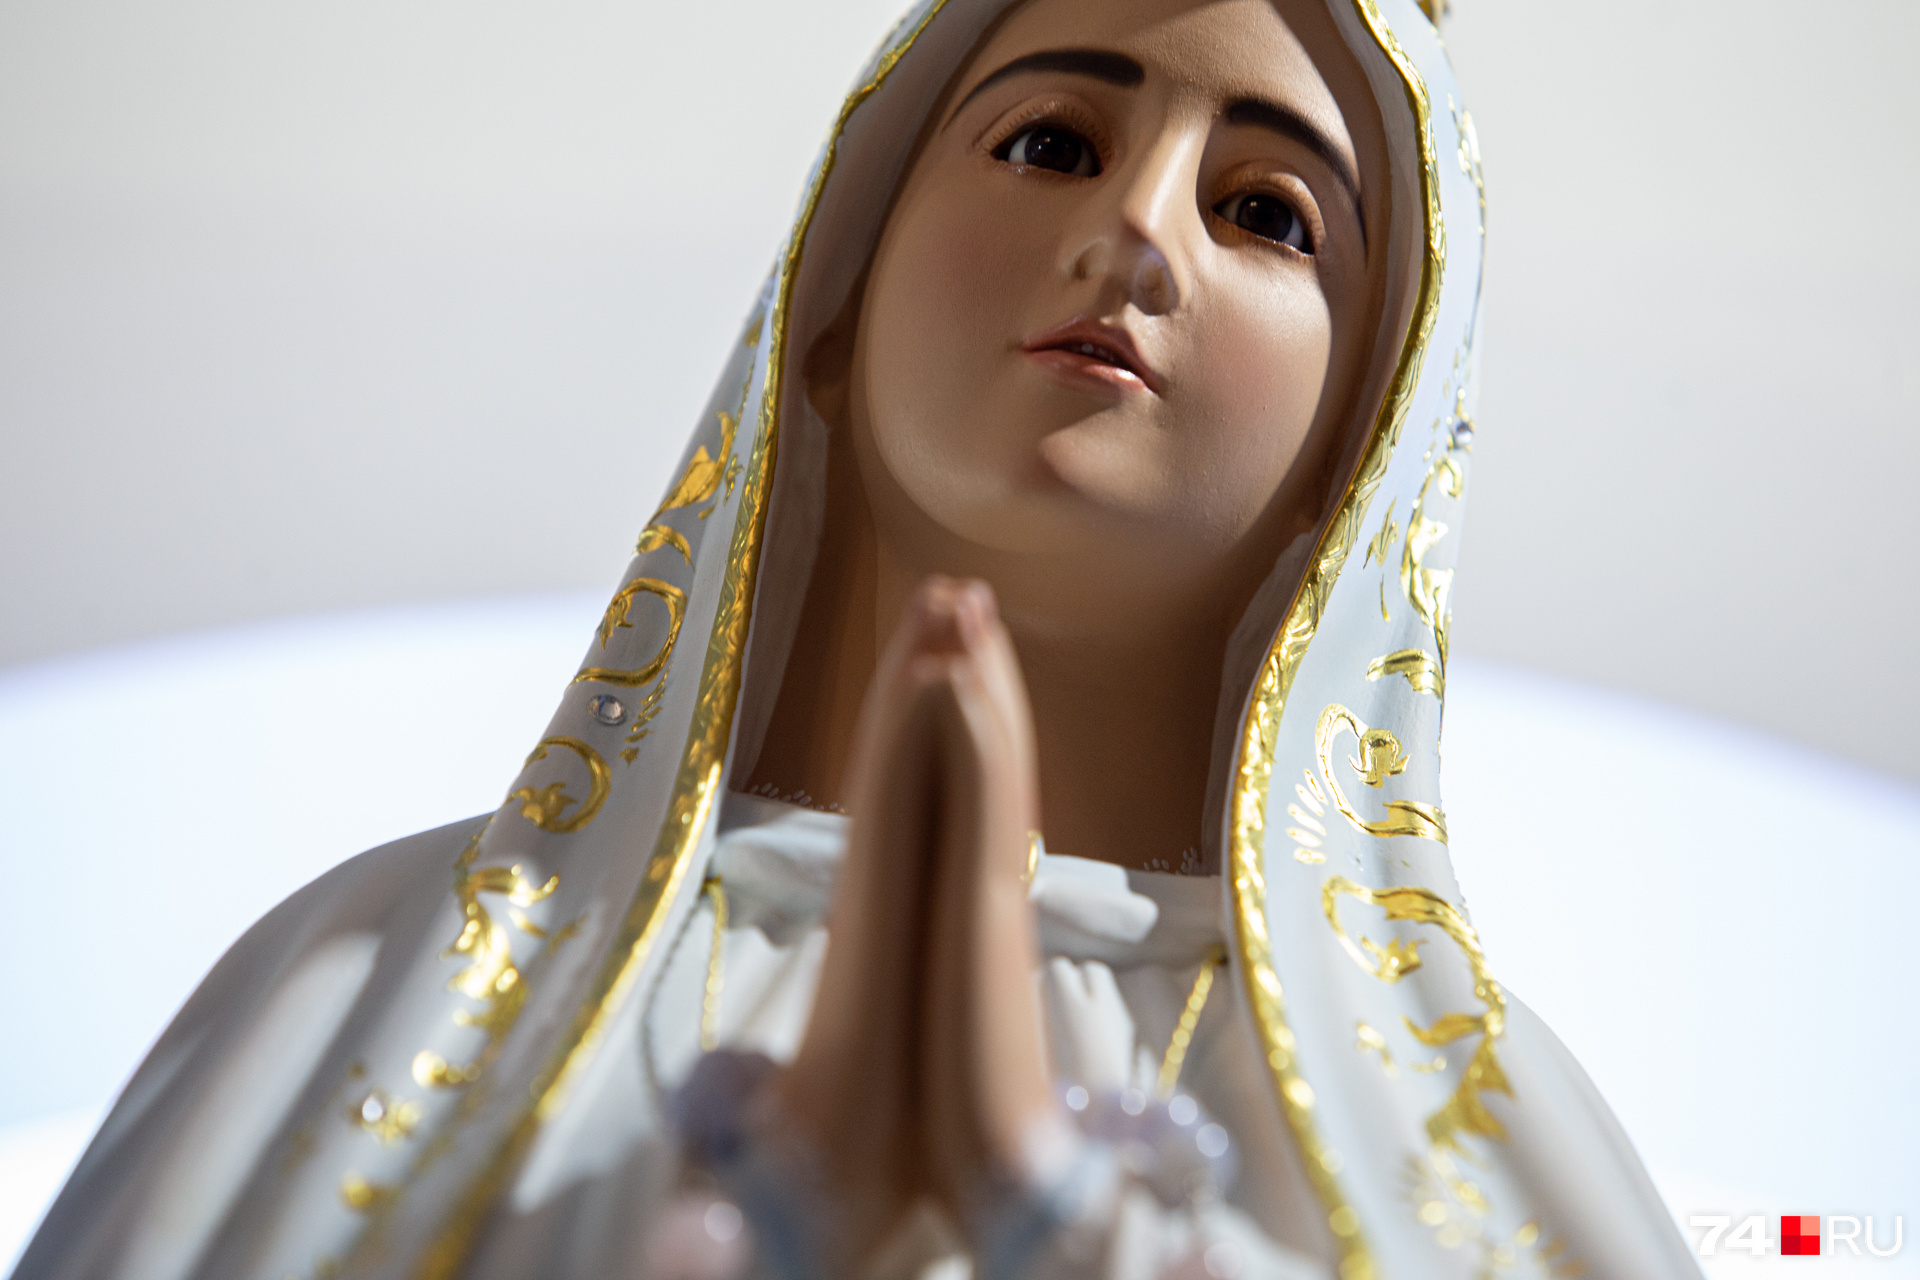 Скульптура католической Девы Марии прибыла из Португалии, она настолько реалистична, что напоминает восковые фигуры